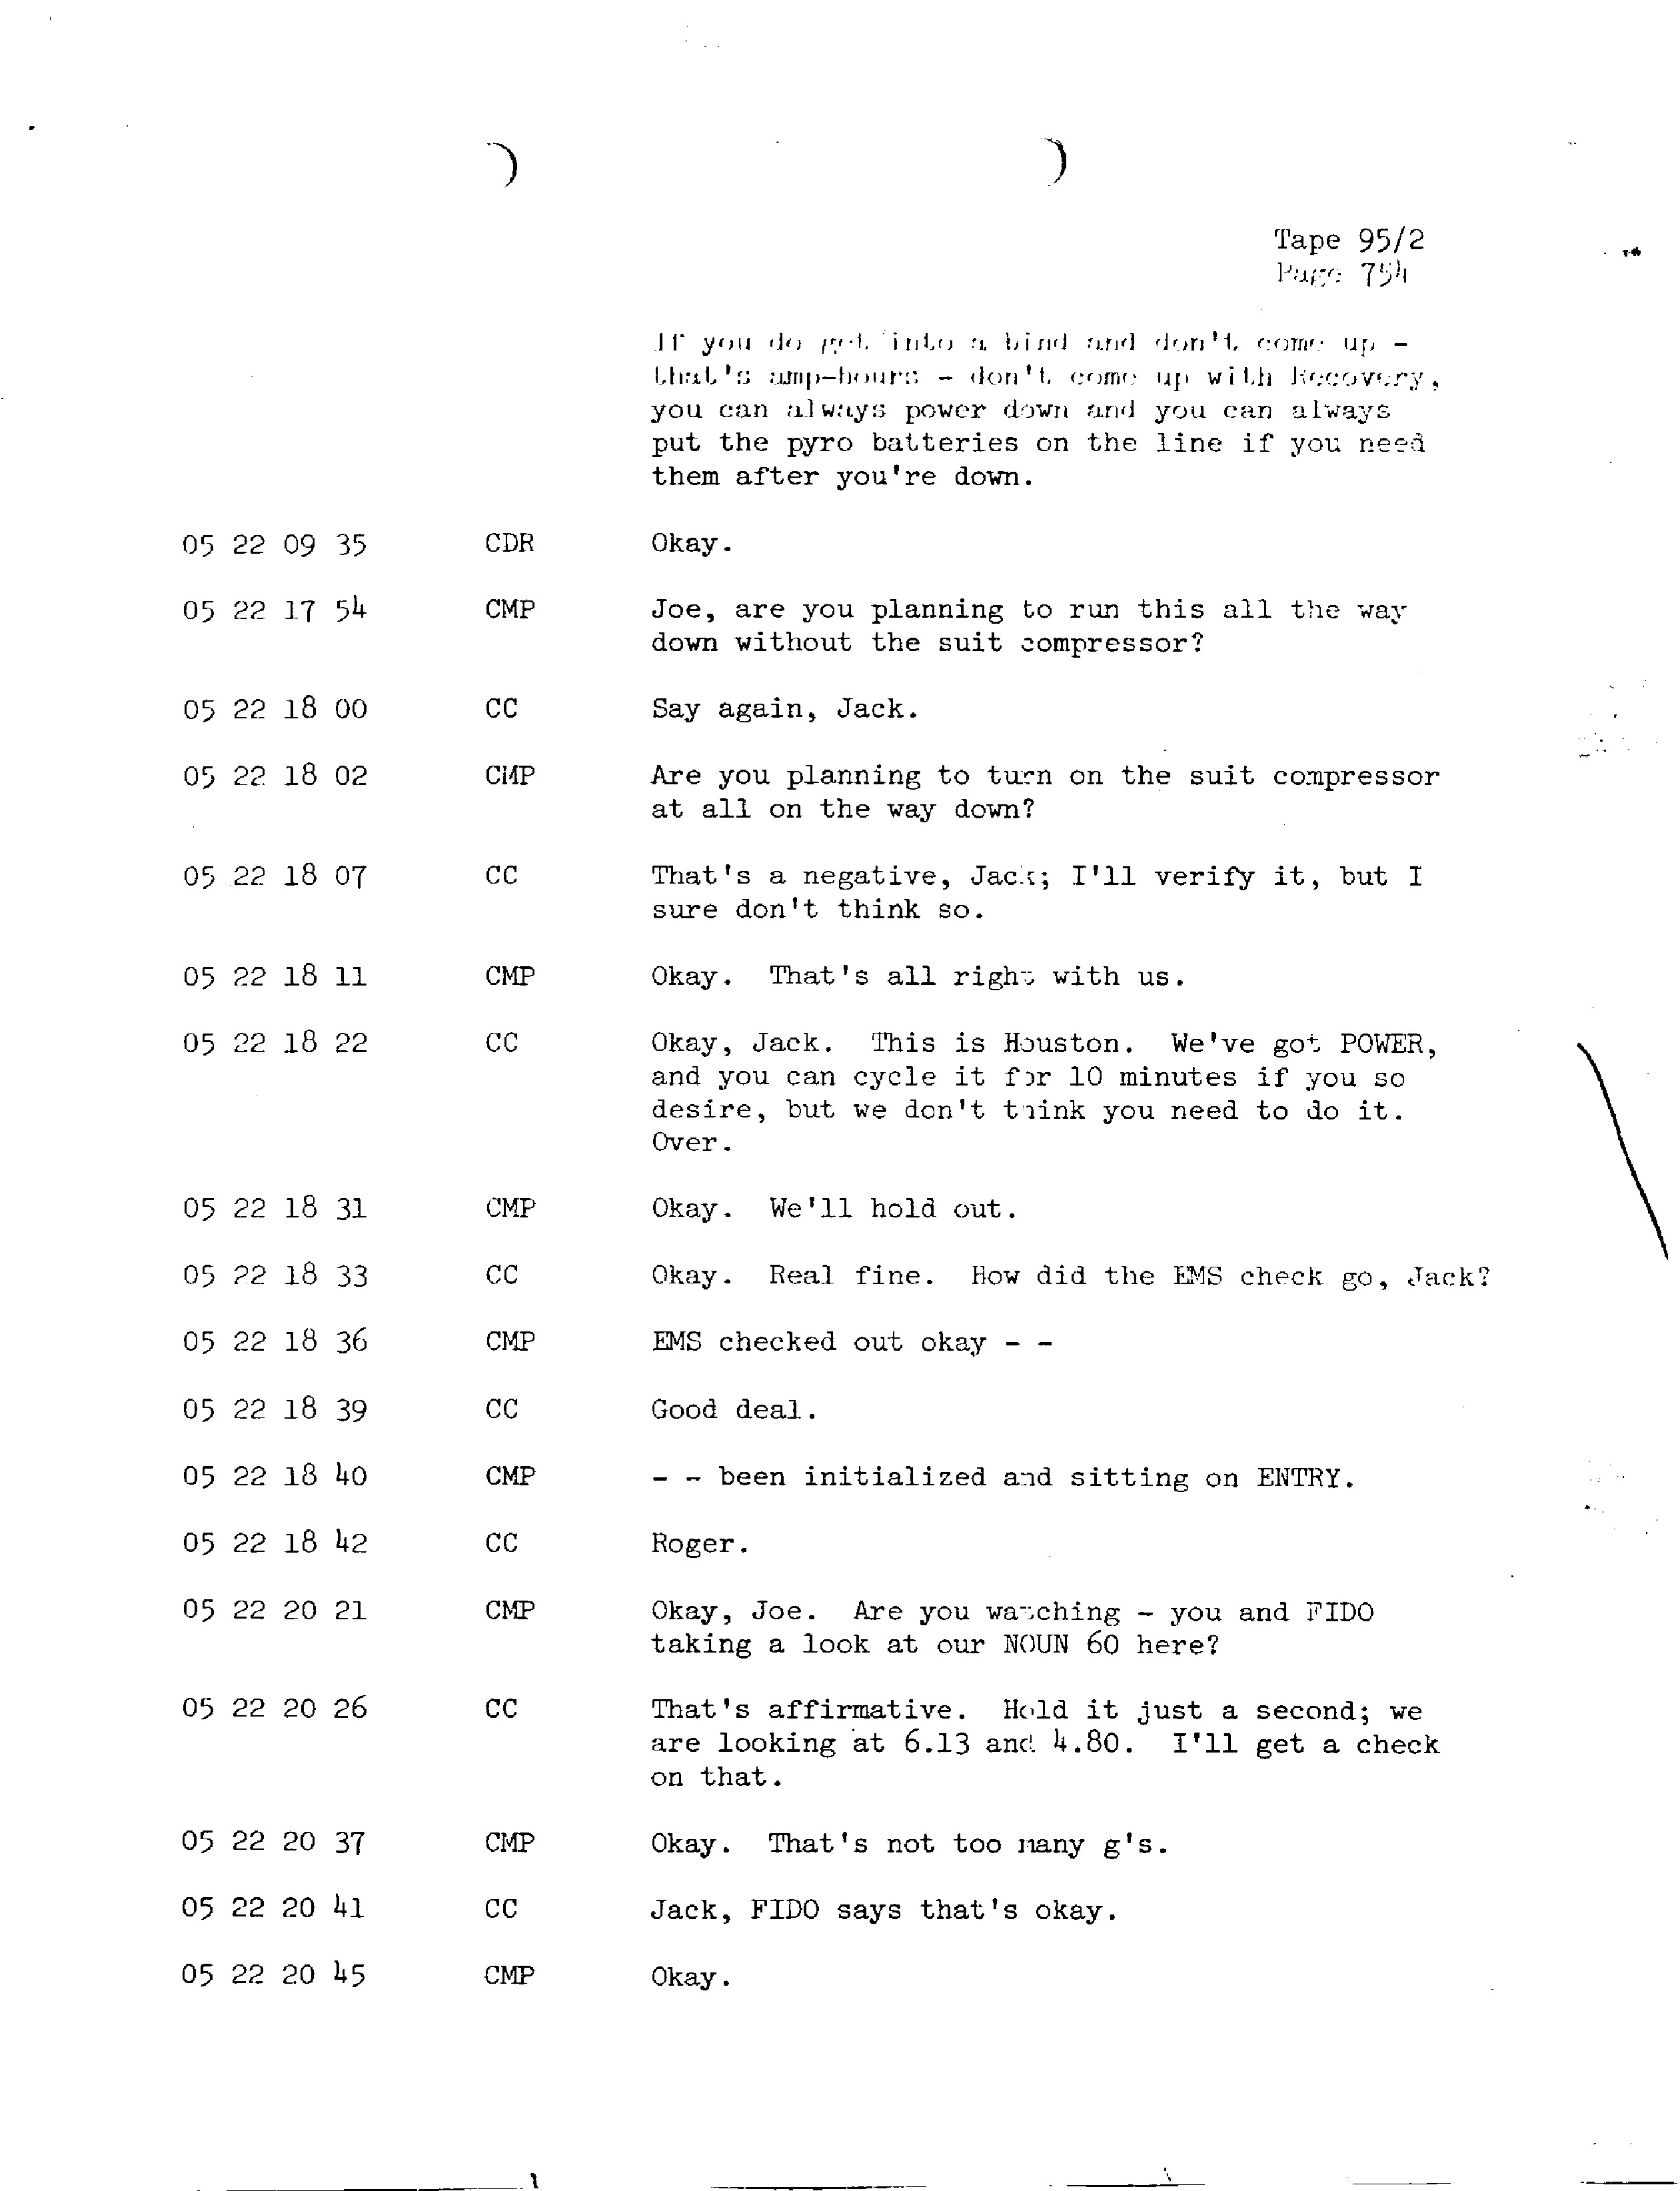 Page 761 of Apollo 13’s original transcript